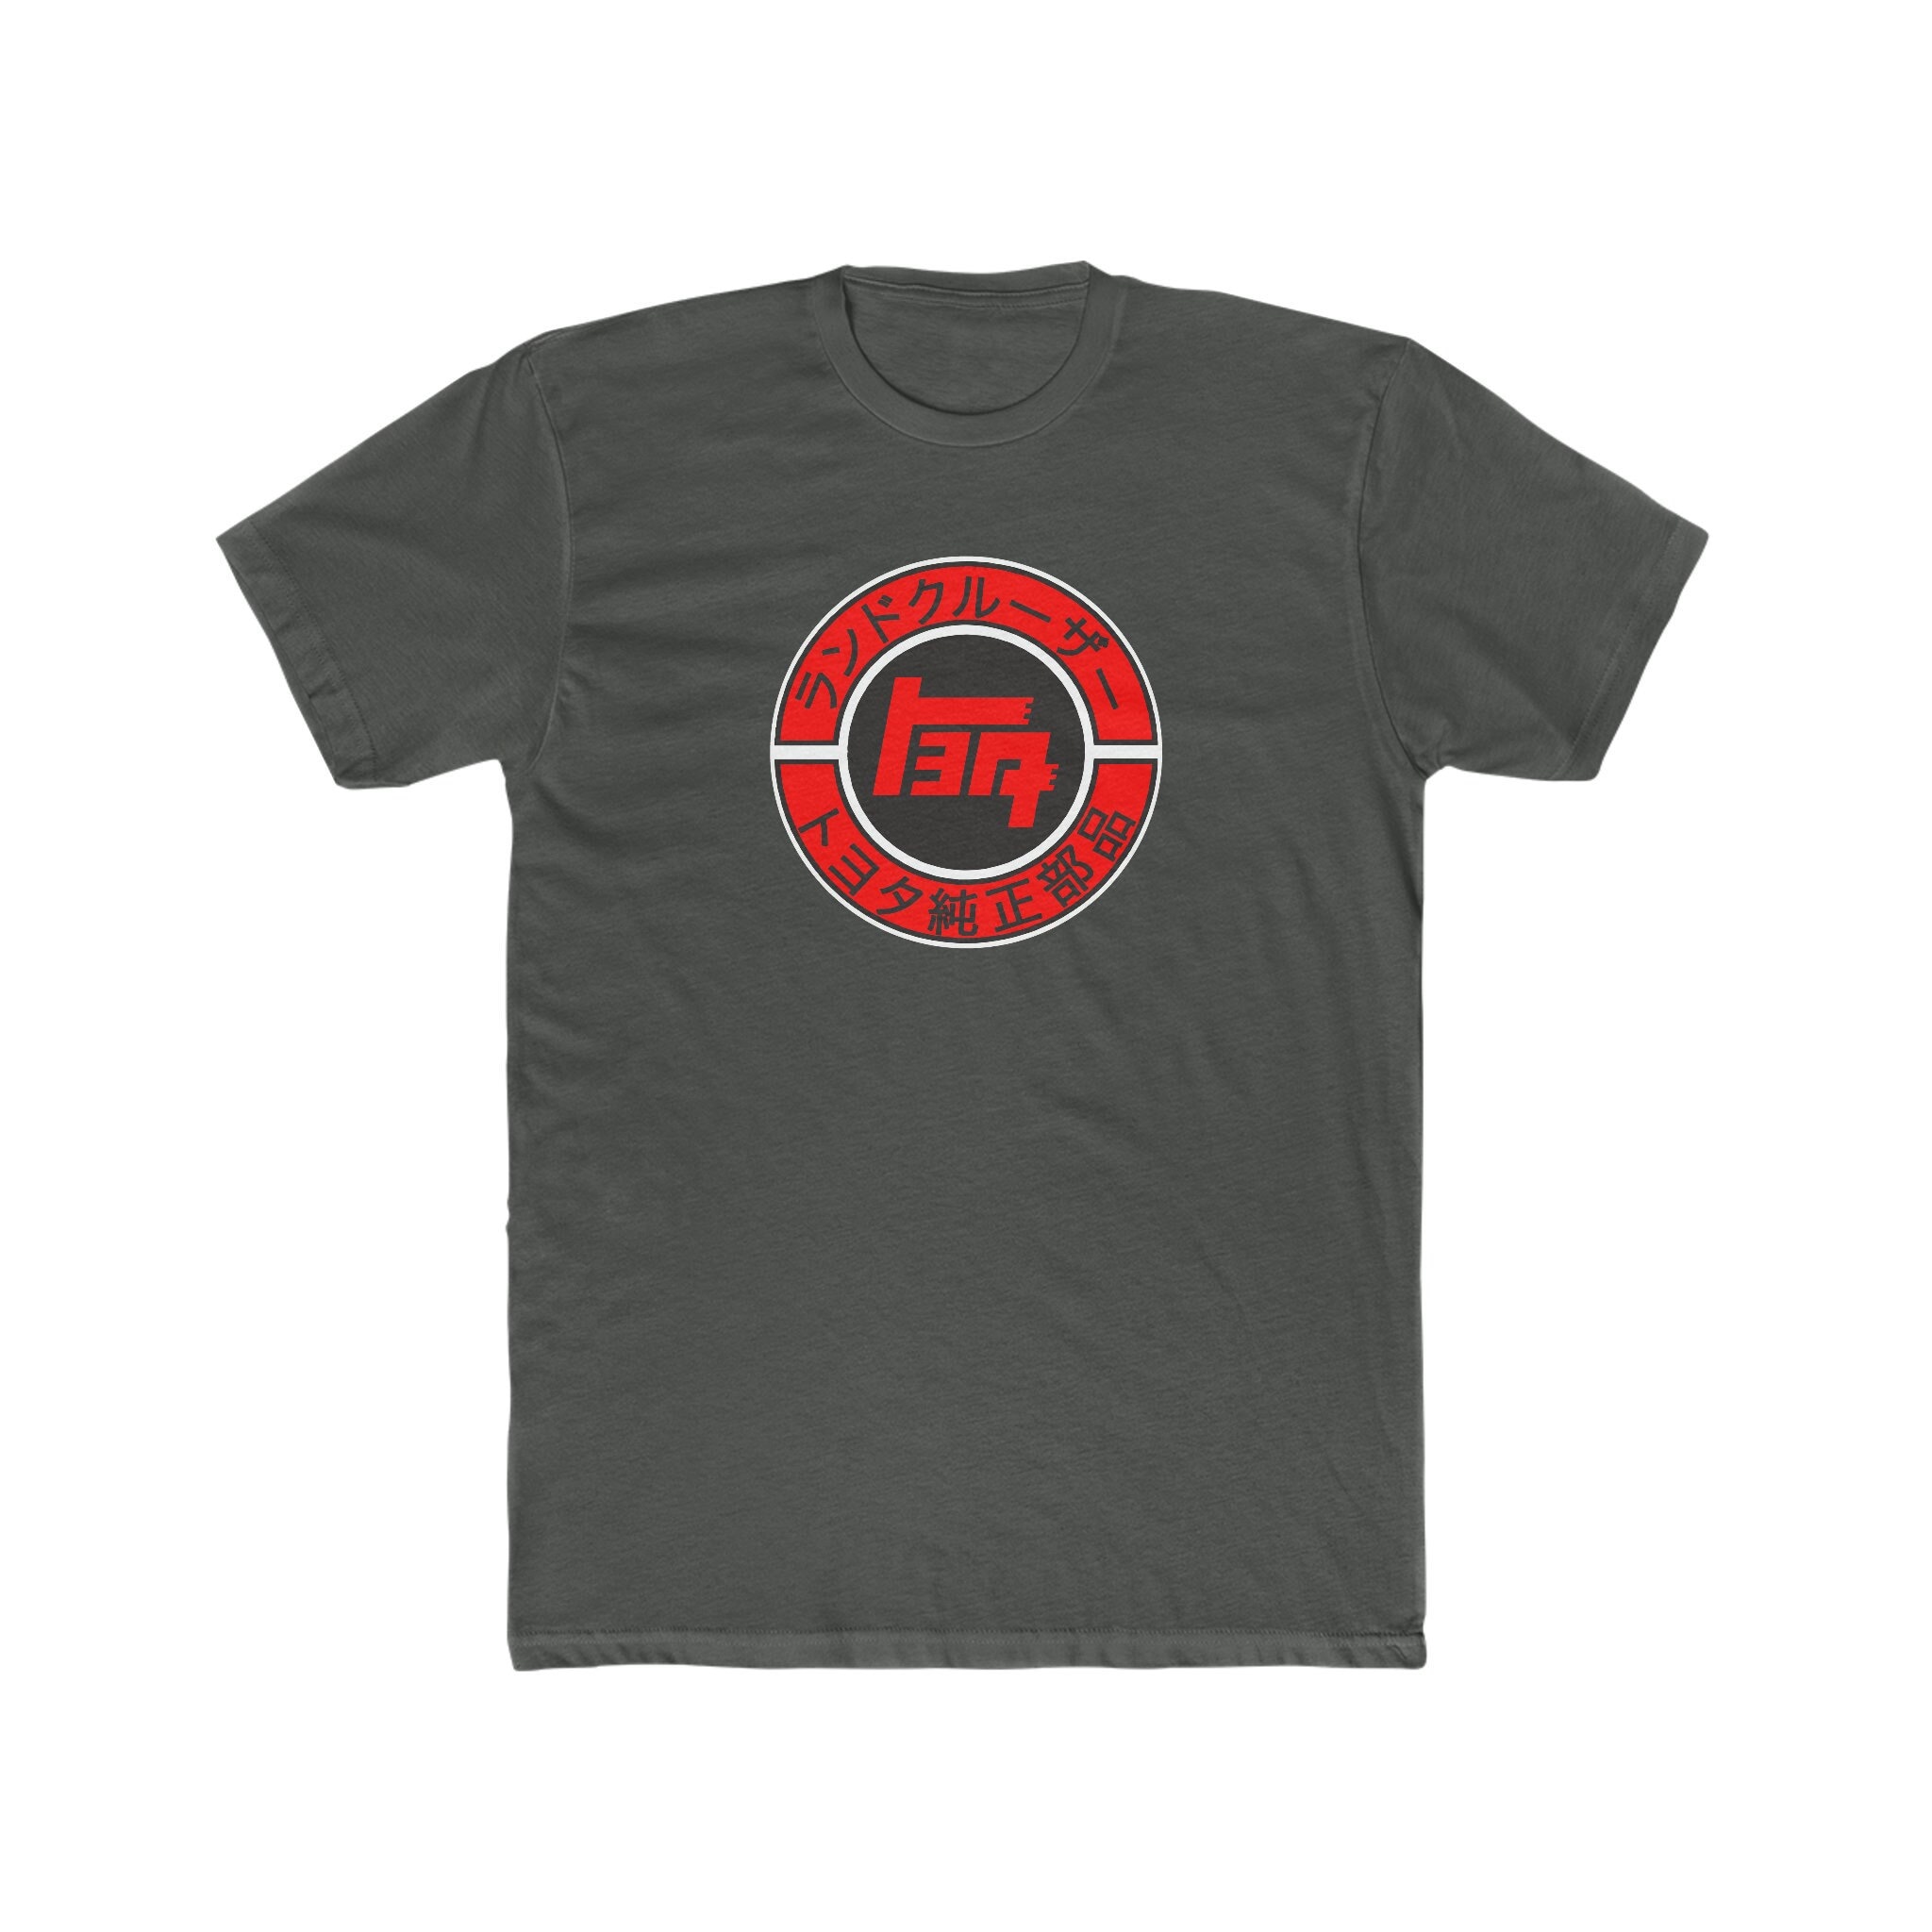 Teq Logo Man's T-Shirt Tee  Mens tshirts, Mens t, T shirt